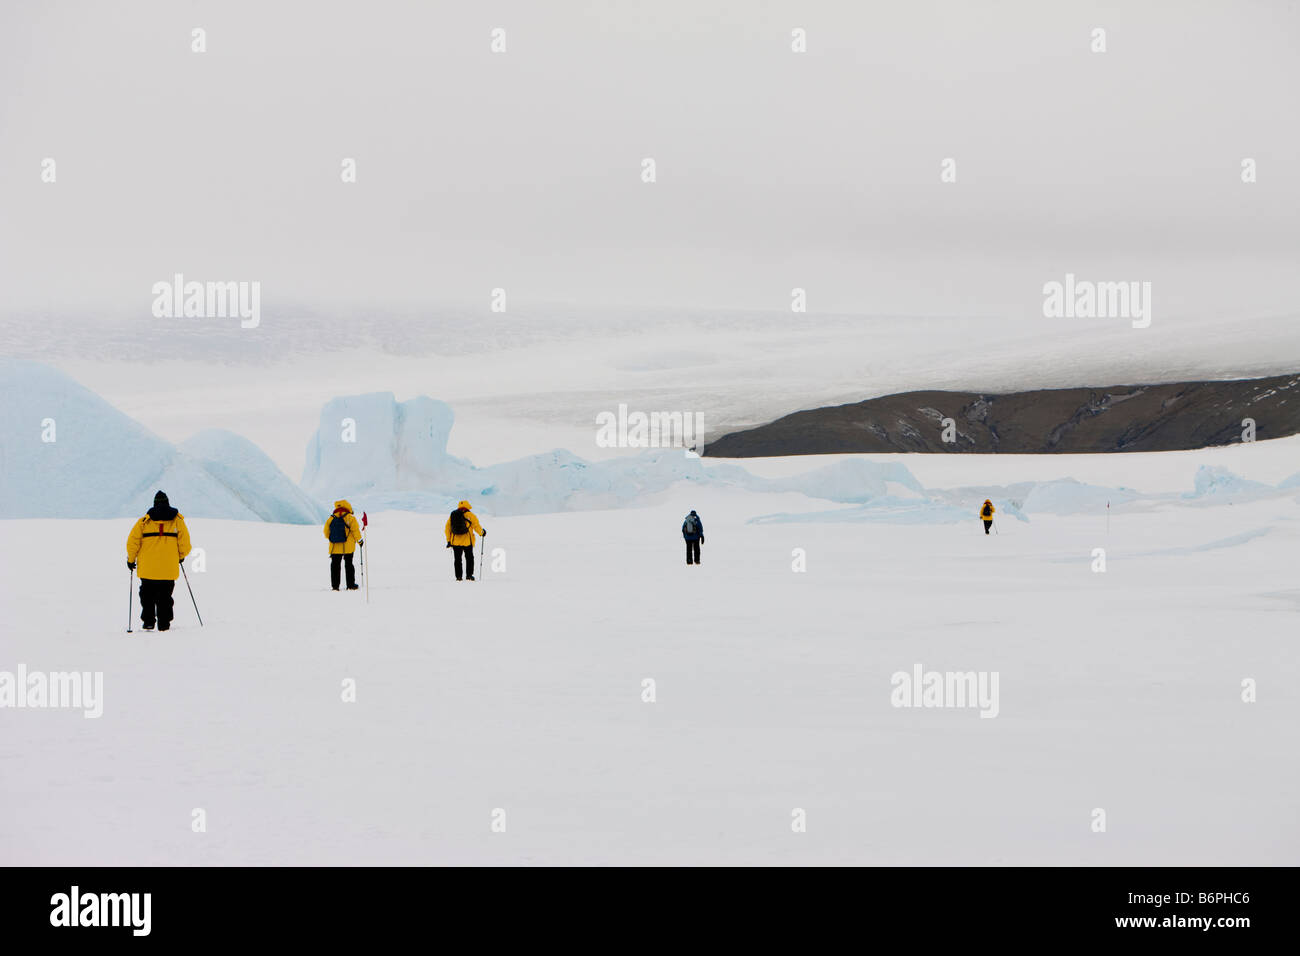 Les touristes d'aventure en jaune manteaux randonnées près de glaciers dans la neige à travers la banquise antarctique sur Snow Hill Island au sud-ouest de l'Antarctique Banque D'Images